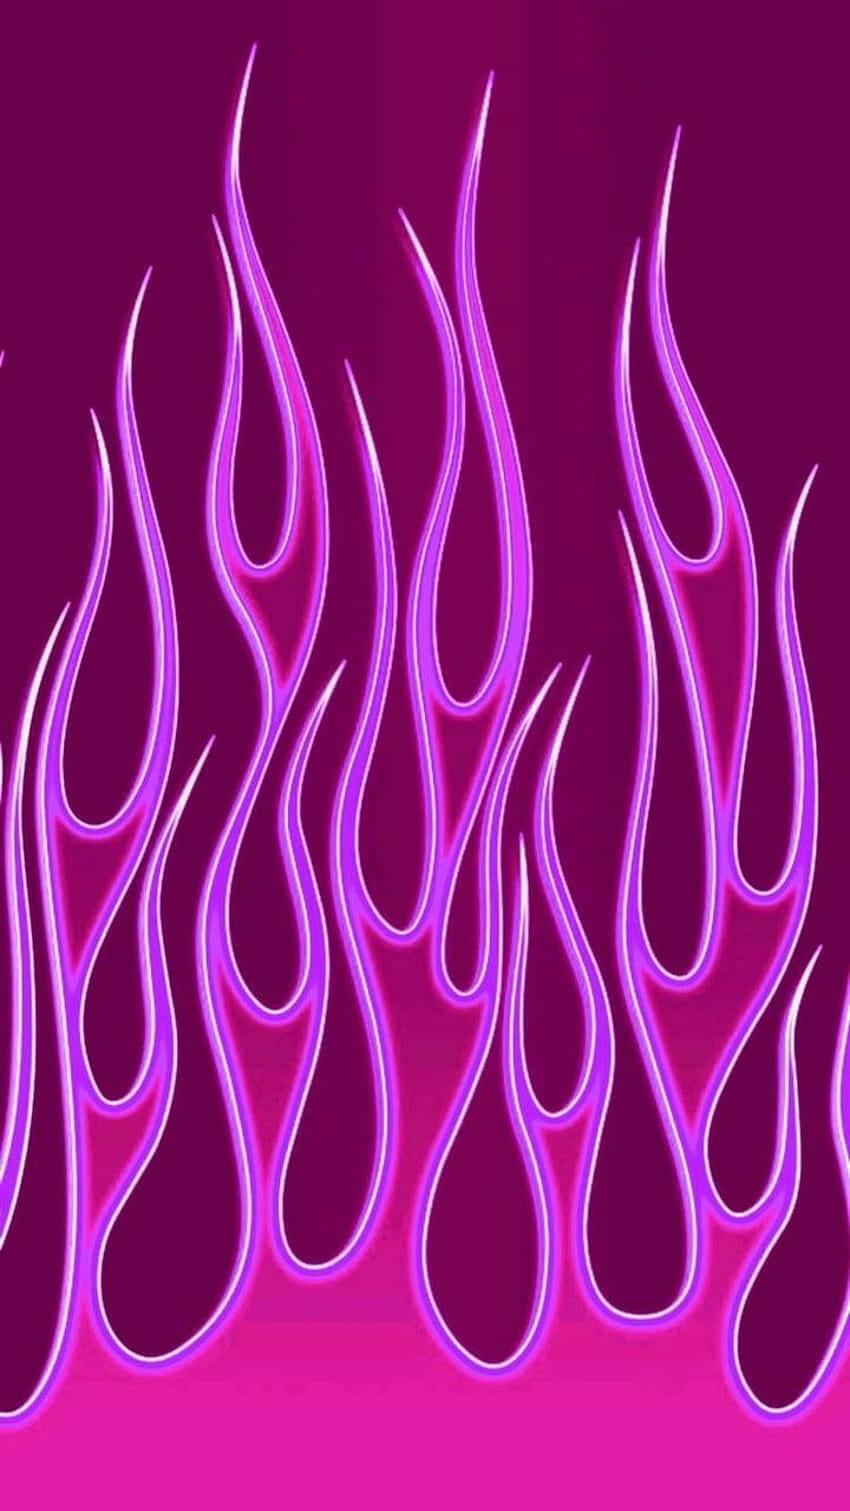 Føl varmen og modet ved lyserøde flammer. Wallpaper